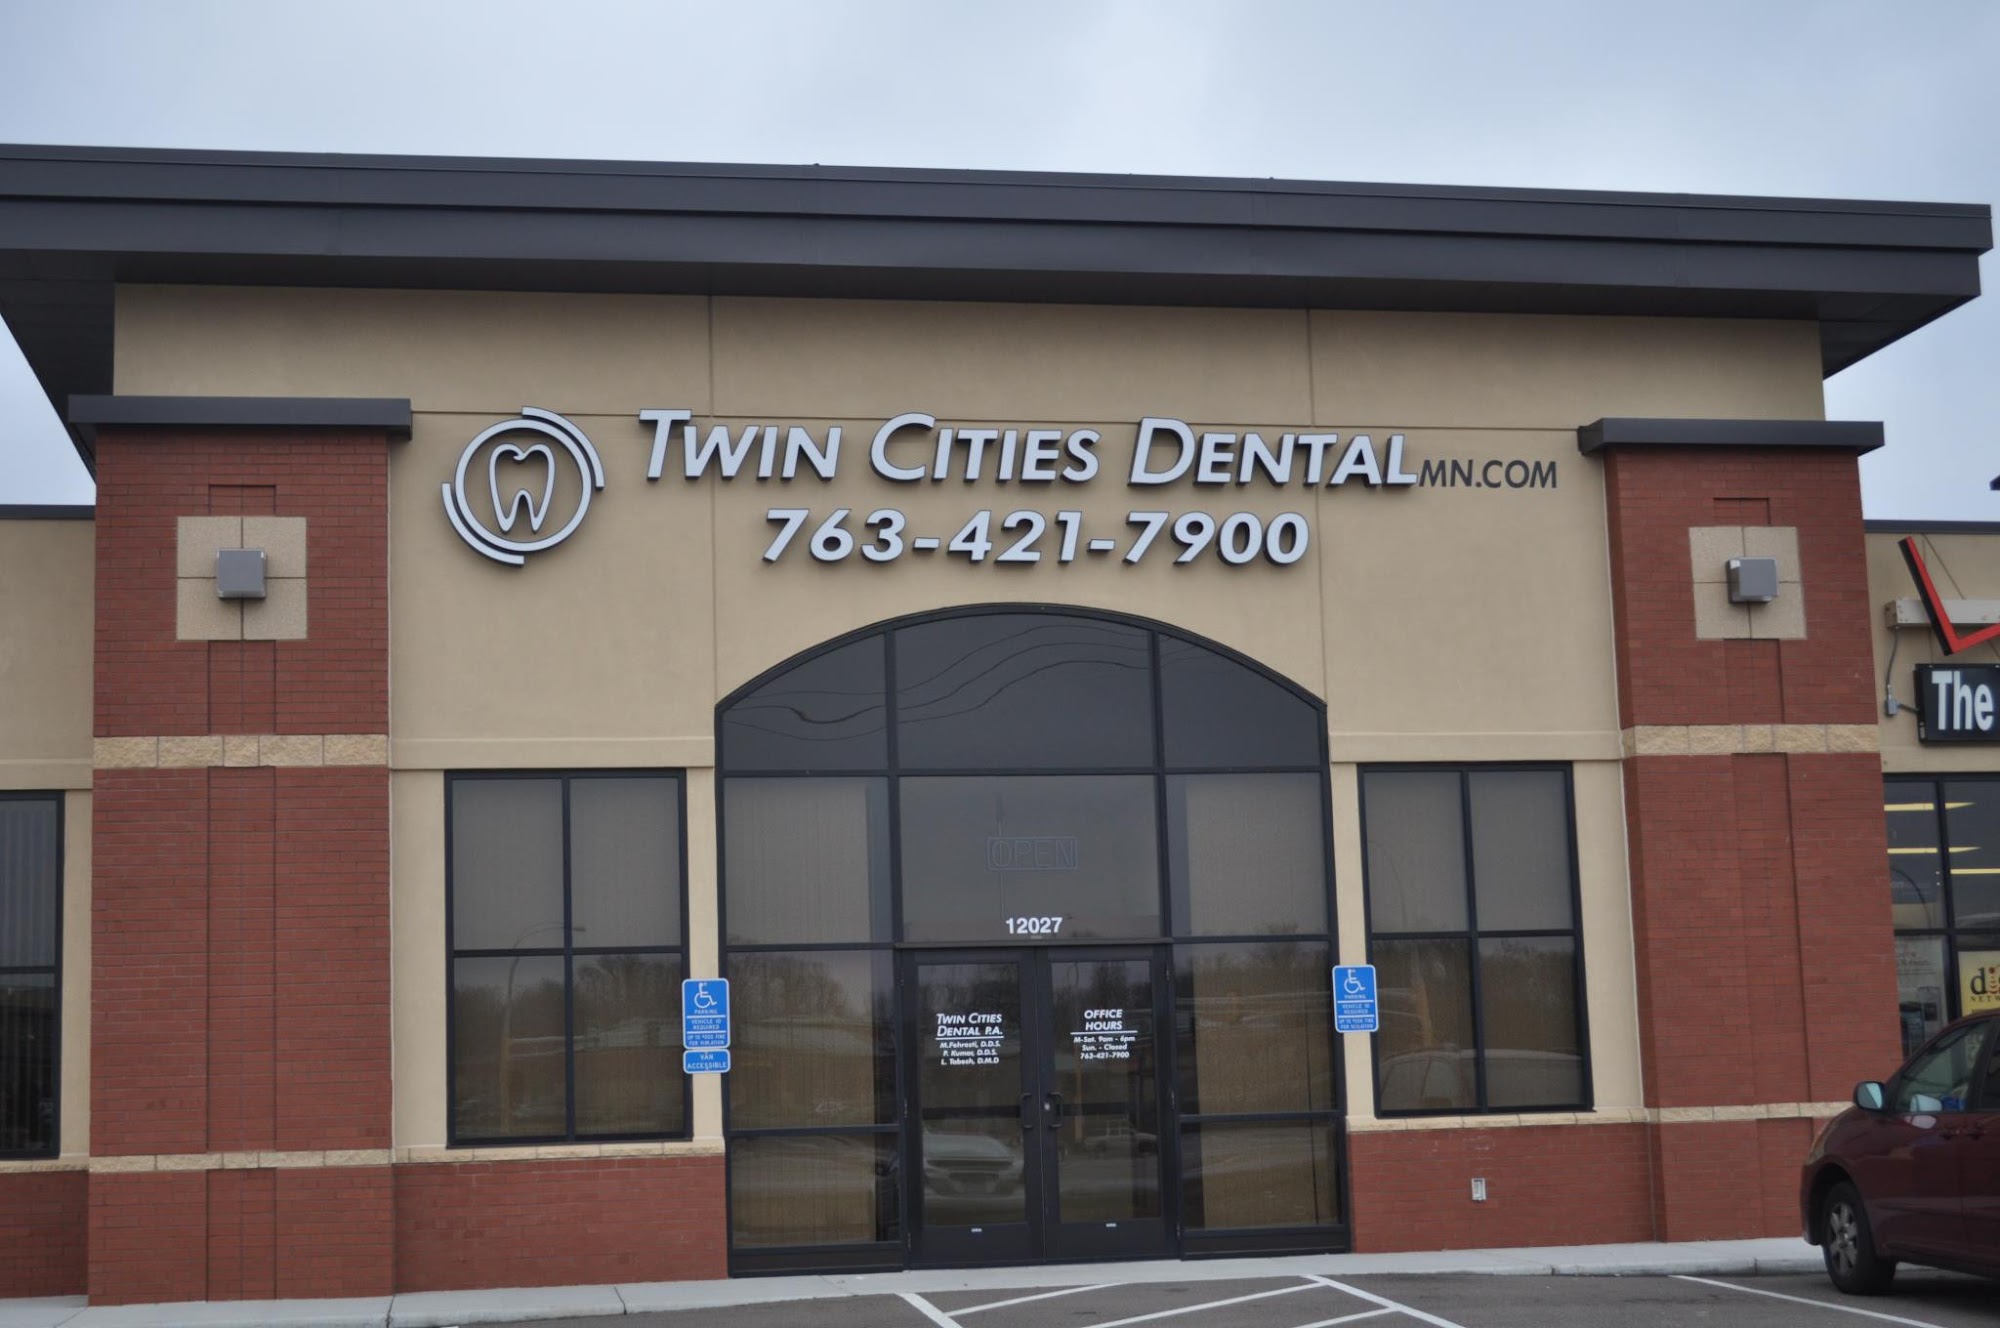 Twin Cities Dental 12027 Business Park Blvd N, Champlin Minnesota 55316